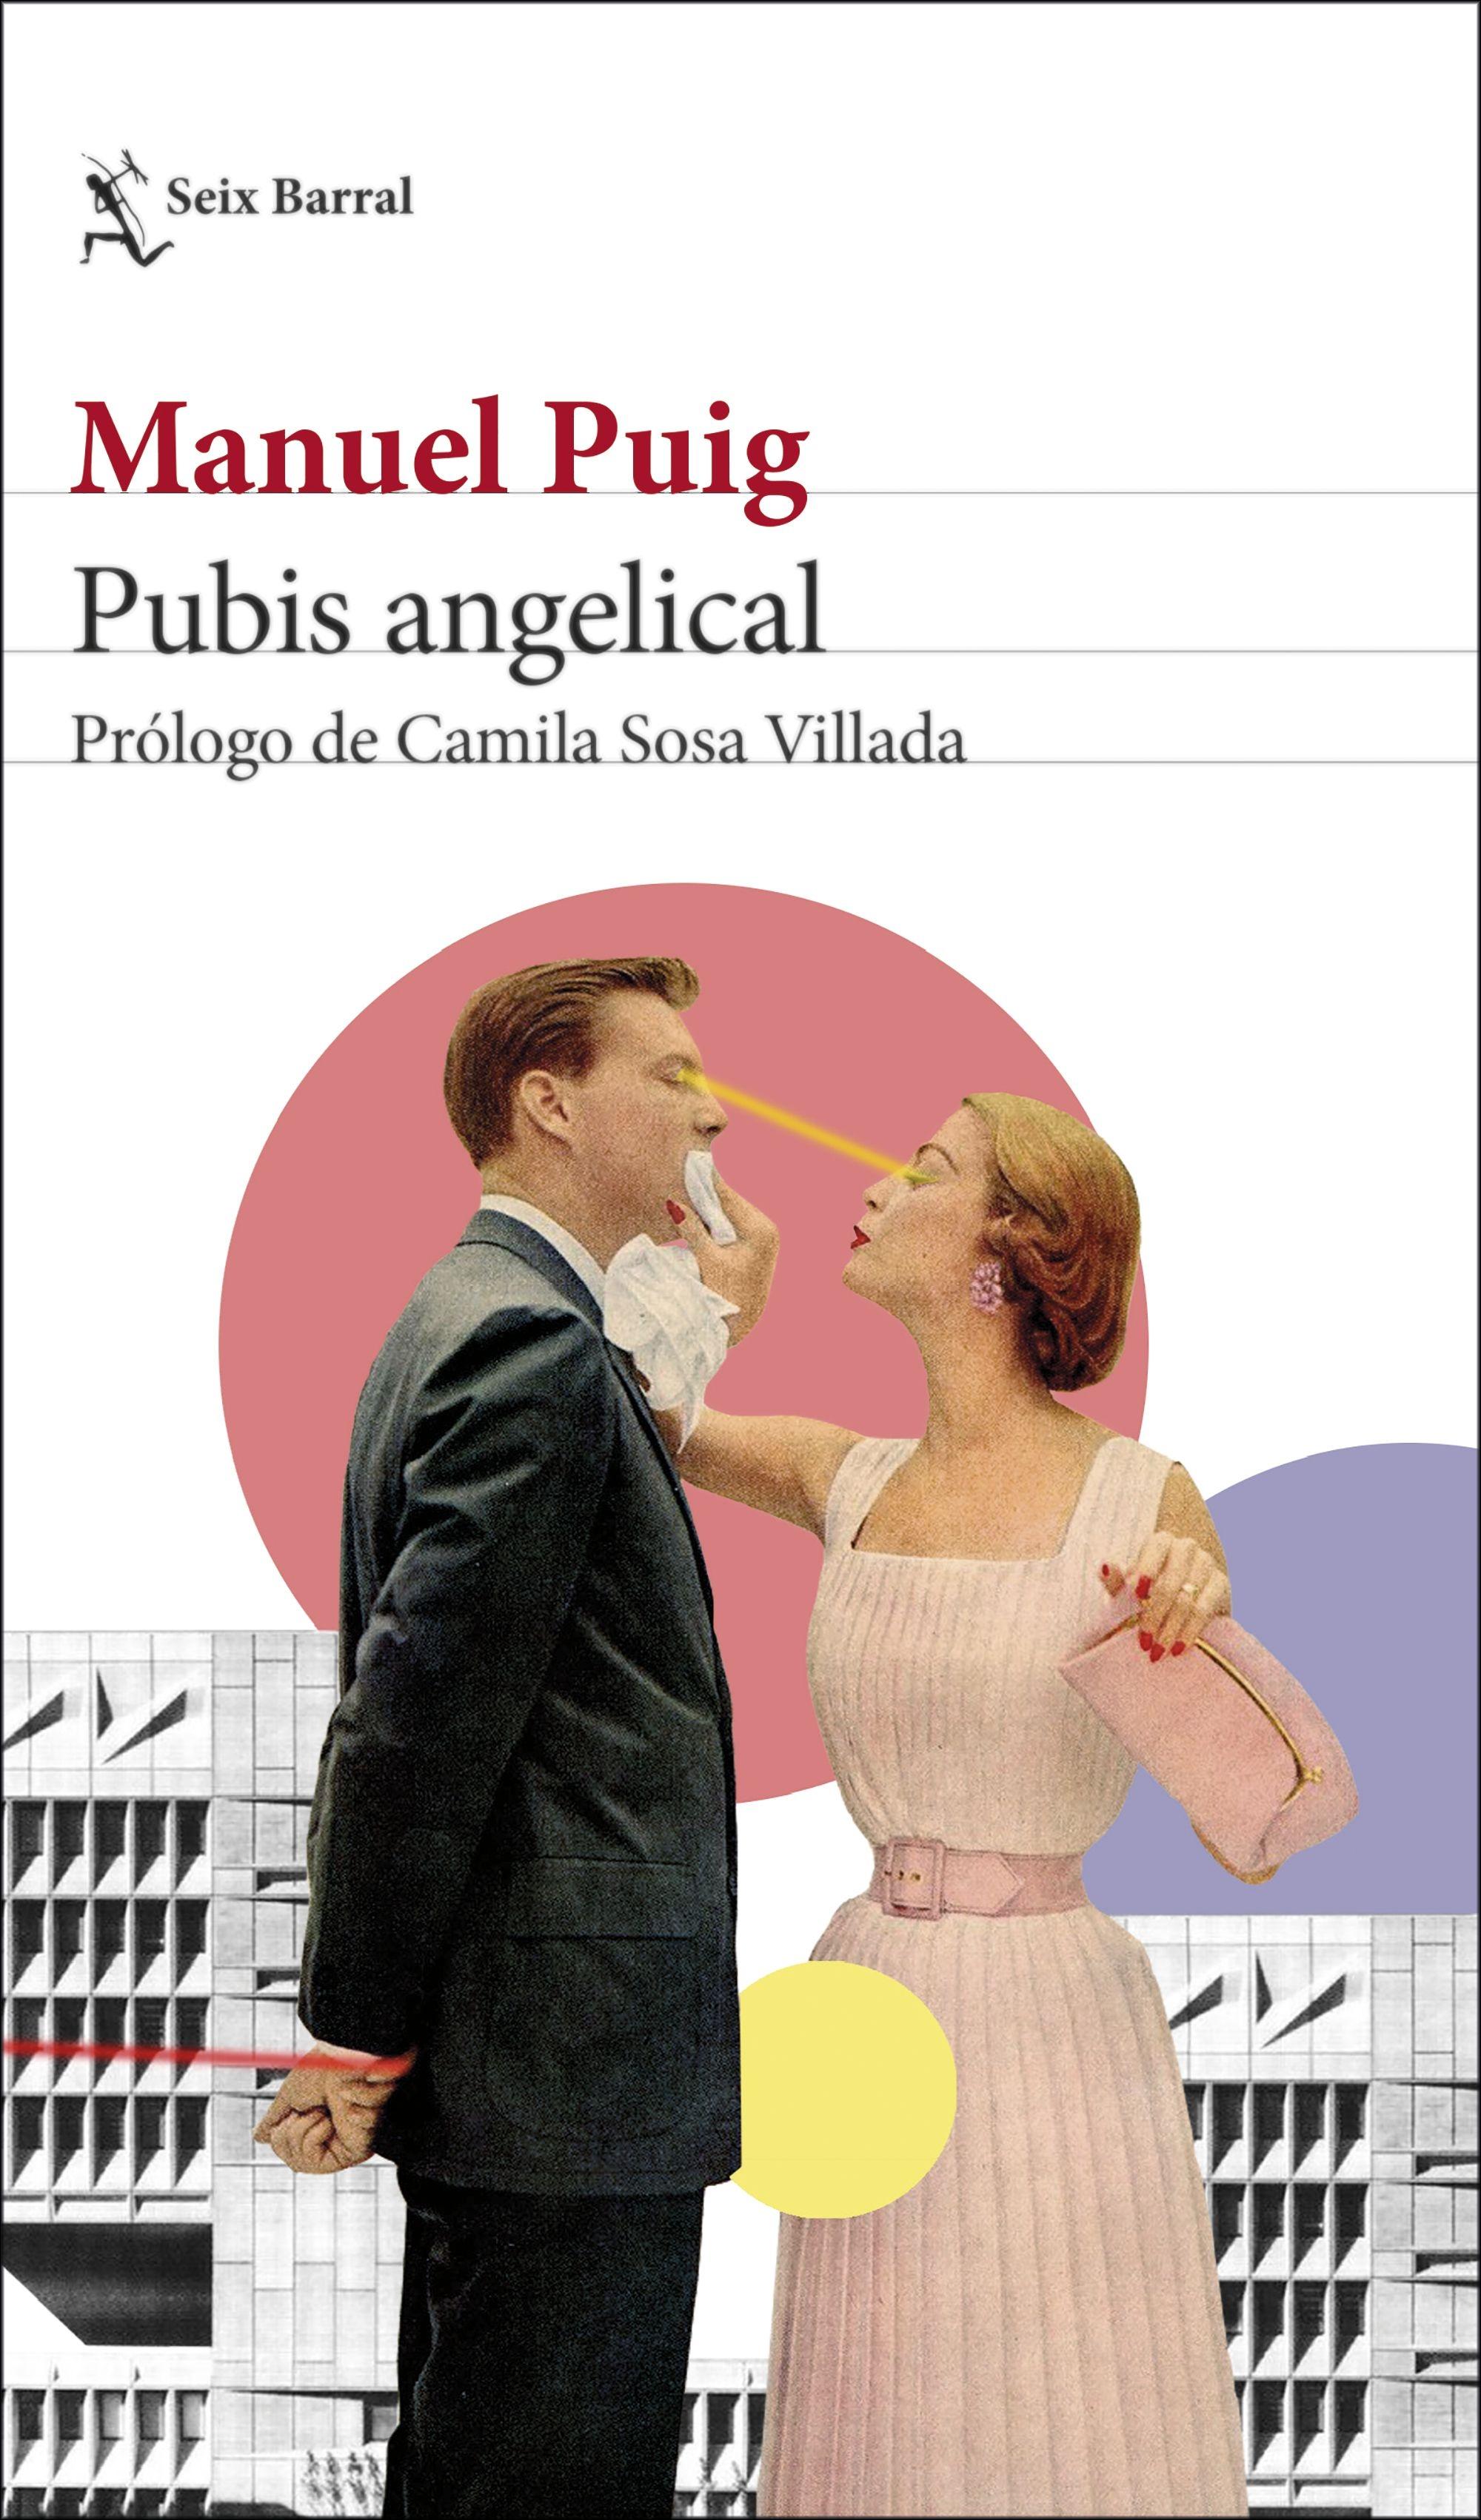 Pubis angelical "Prólogo de Camila Sosa Villada"